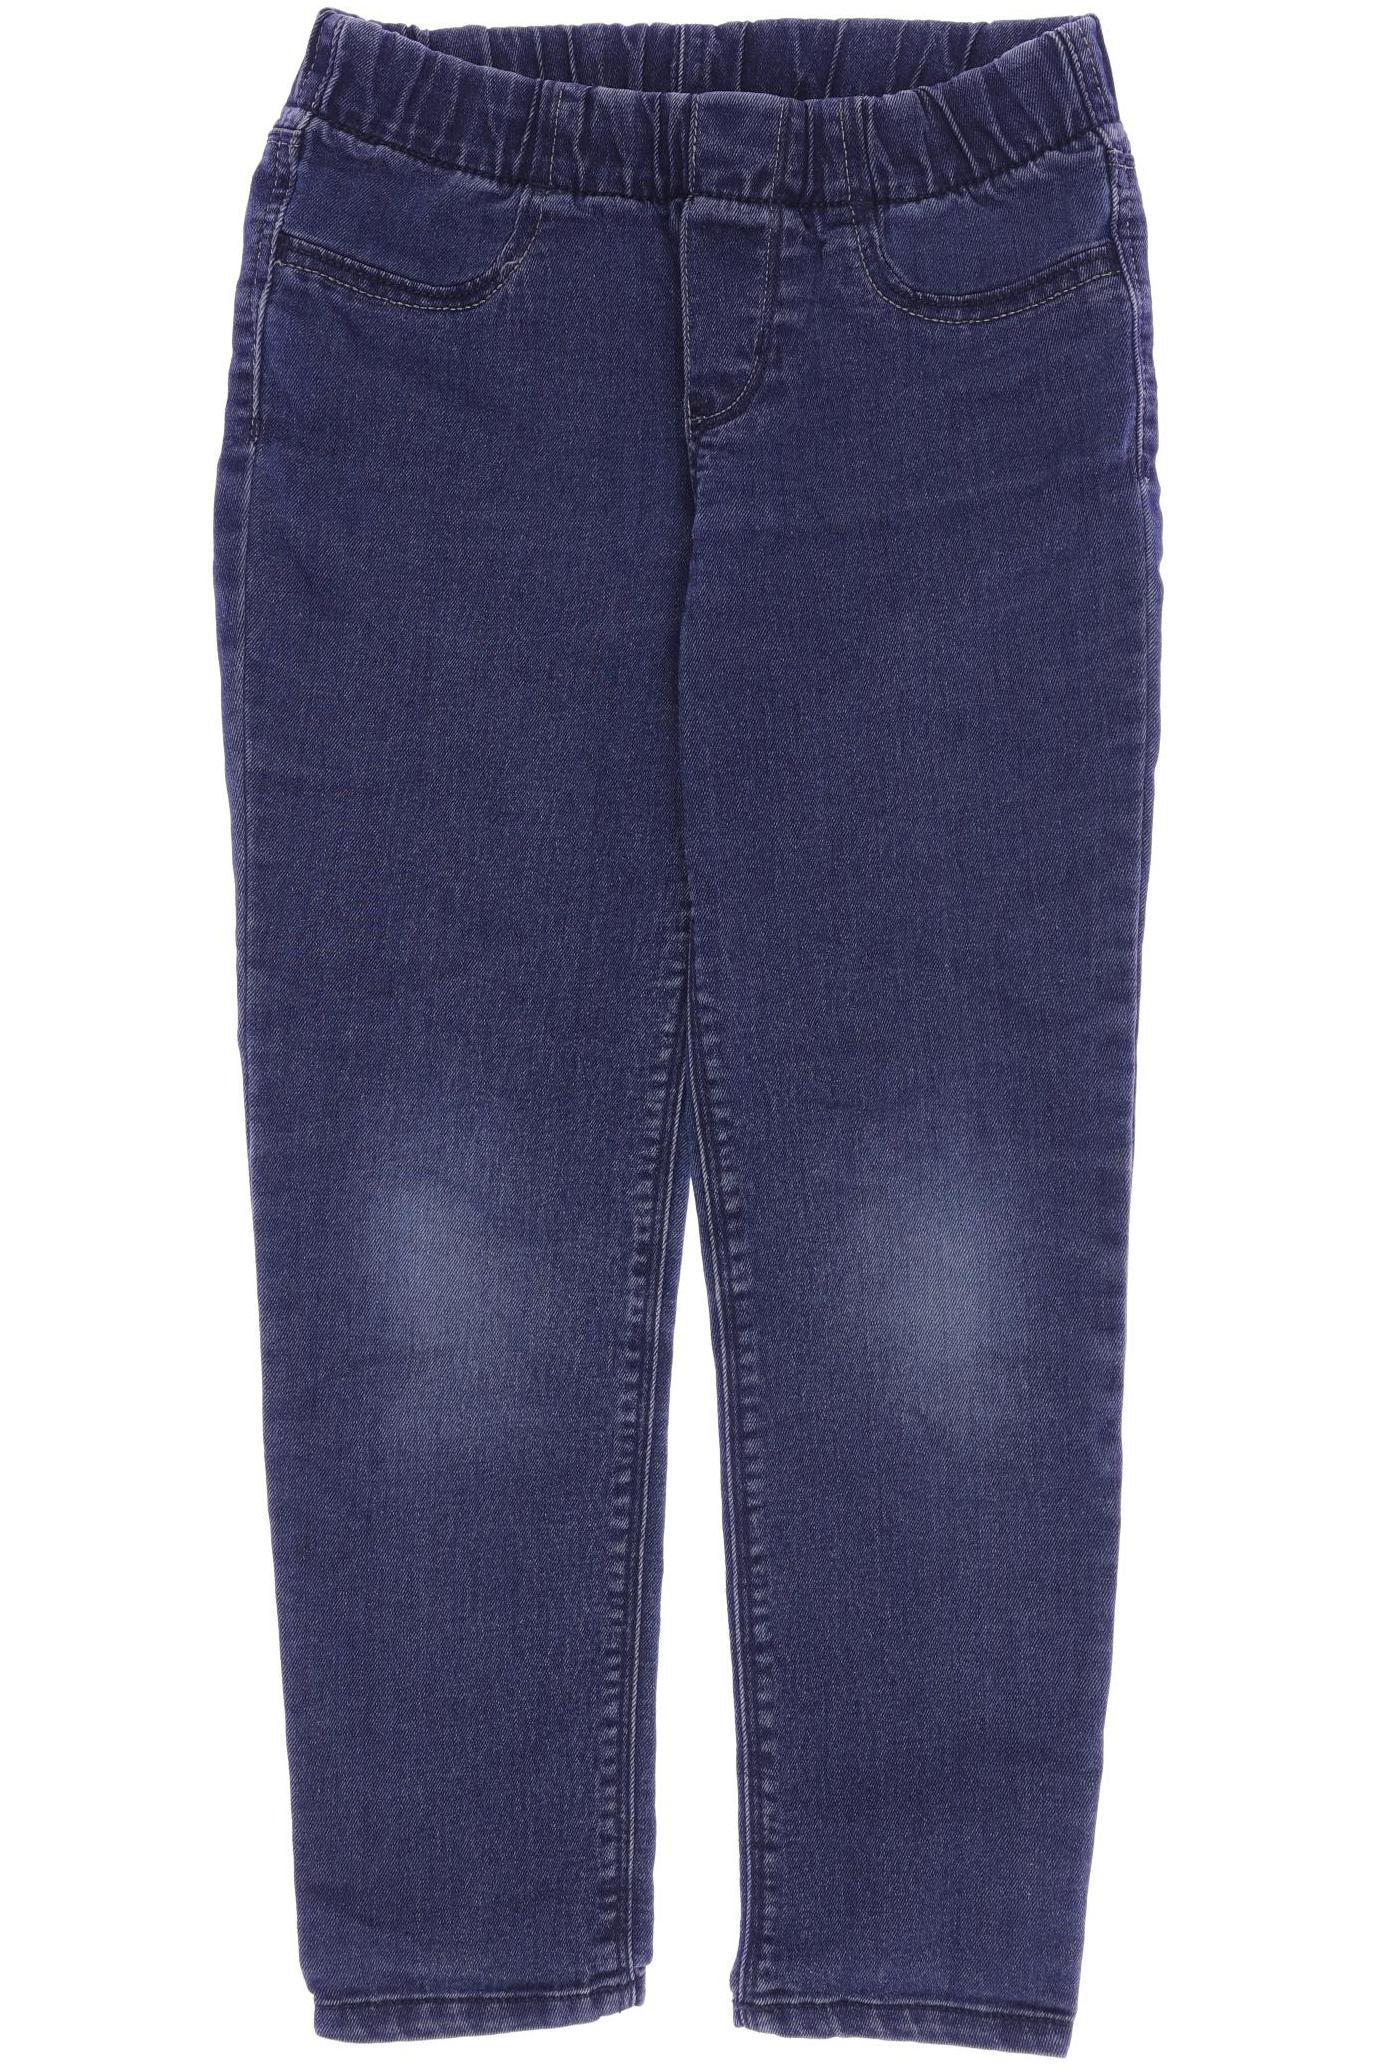 OshKosh Mädchen Jeans, blau von OshKosh